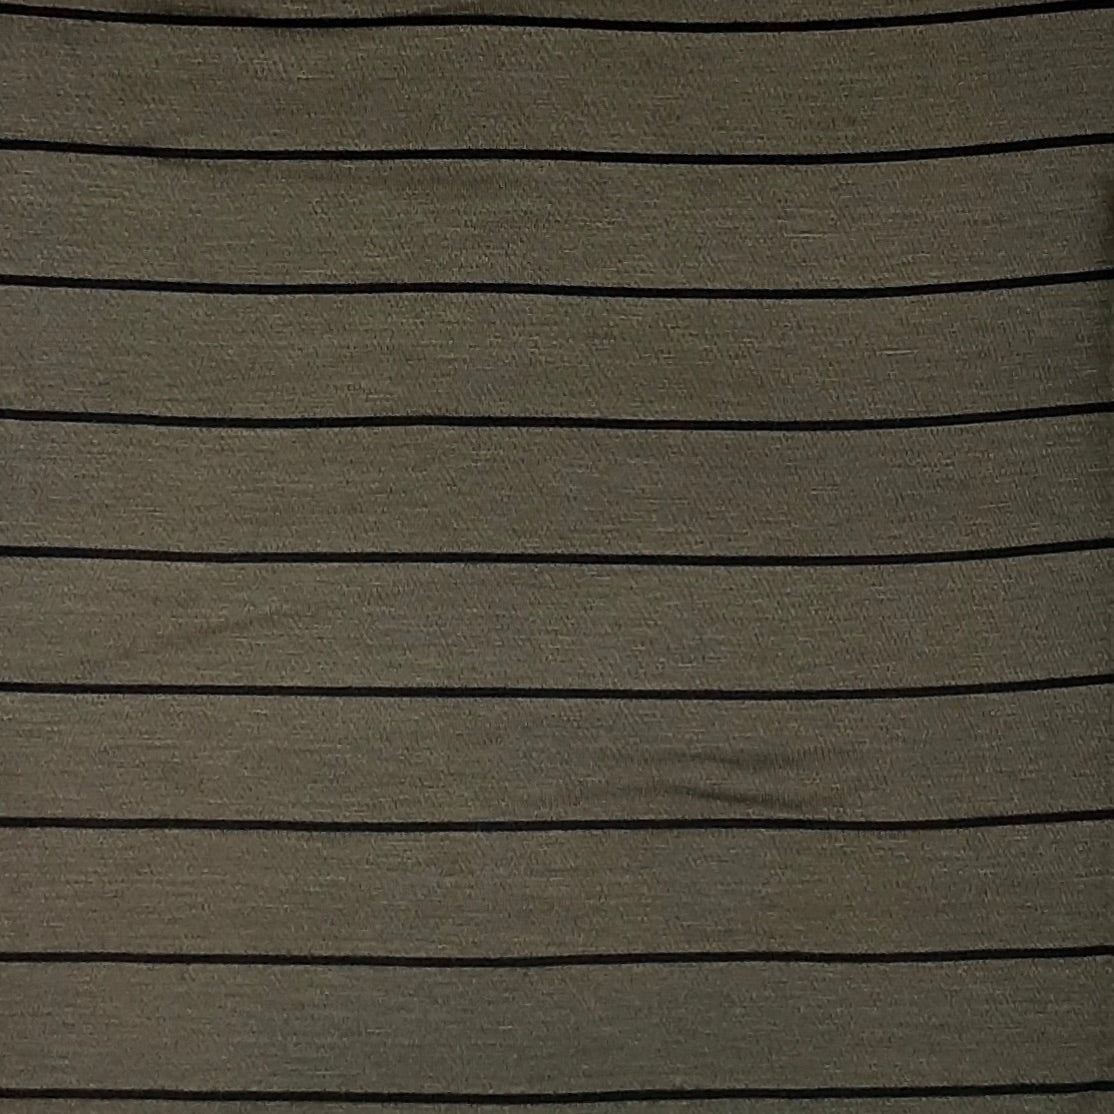 Olive/Black Stripes Jersey Rayon Spandex